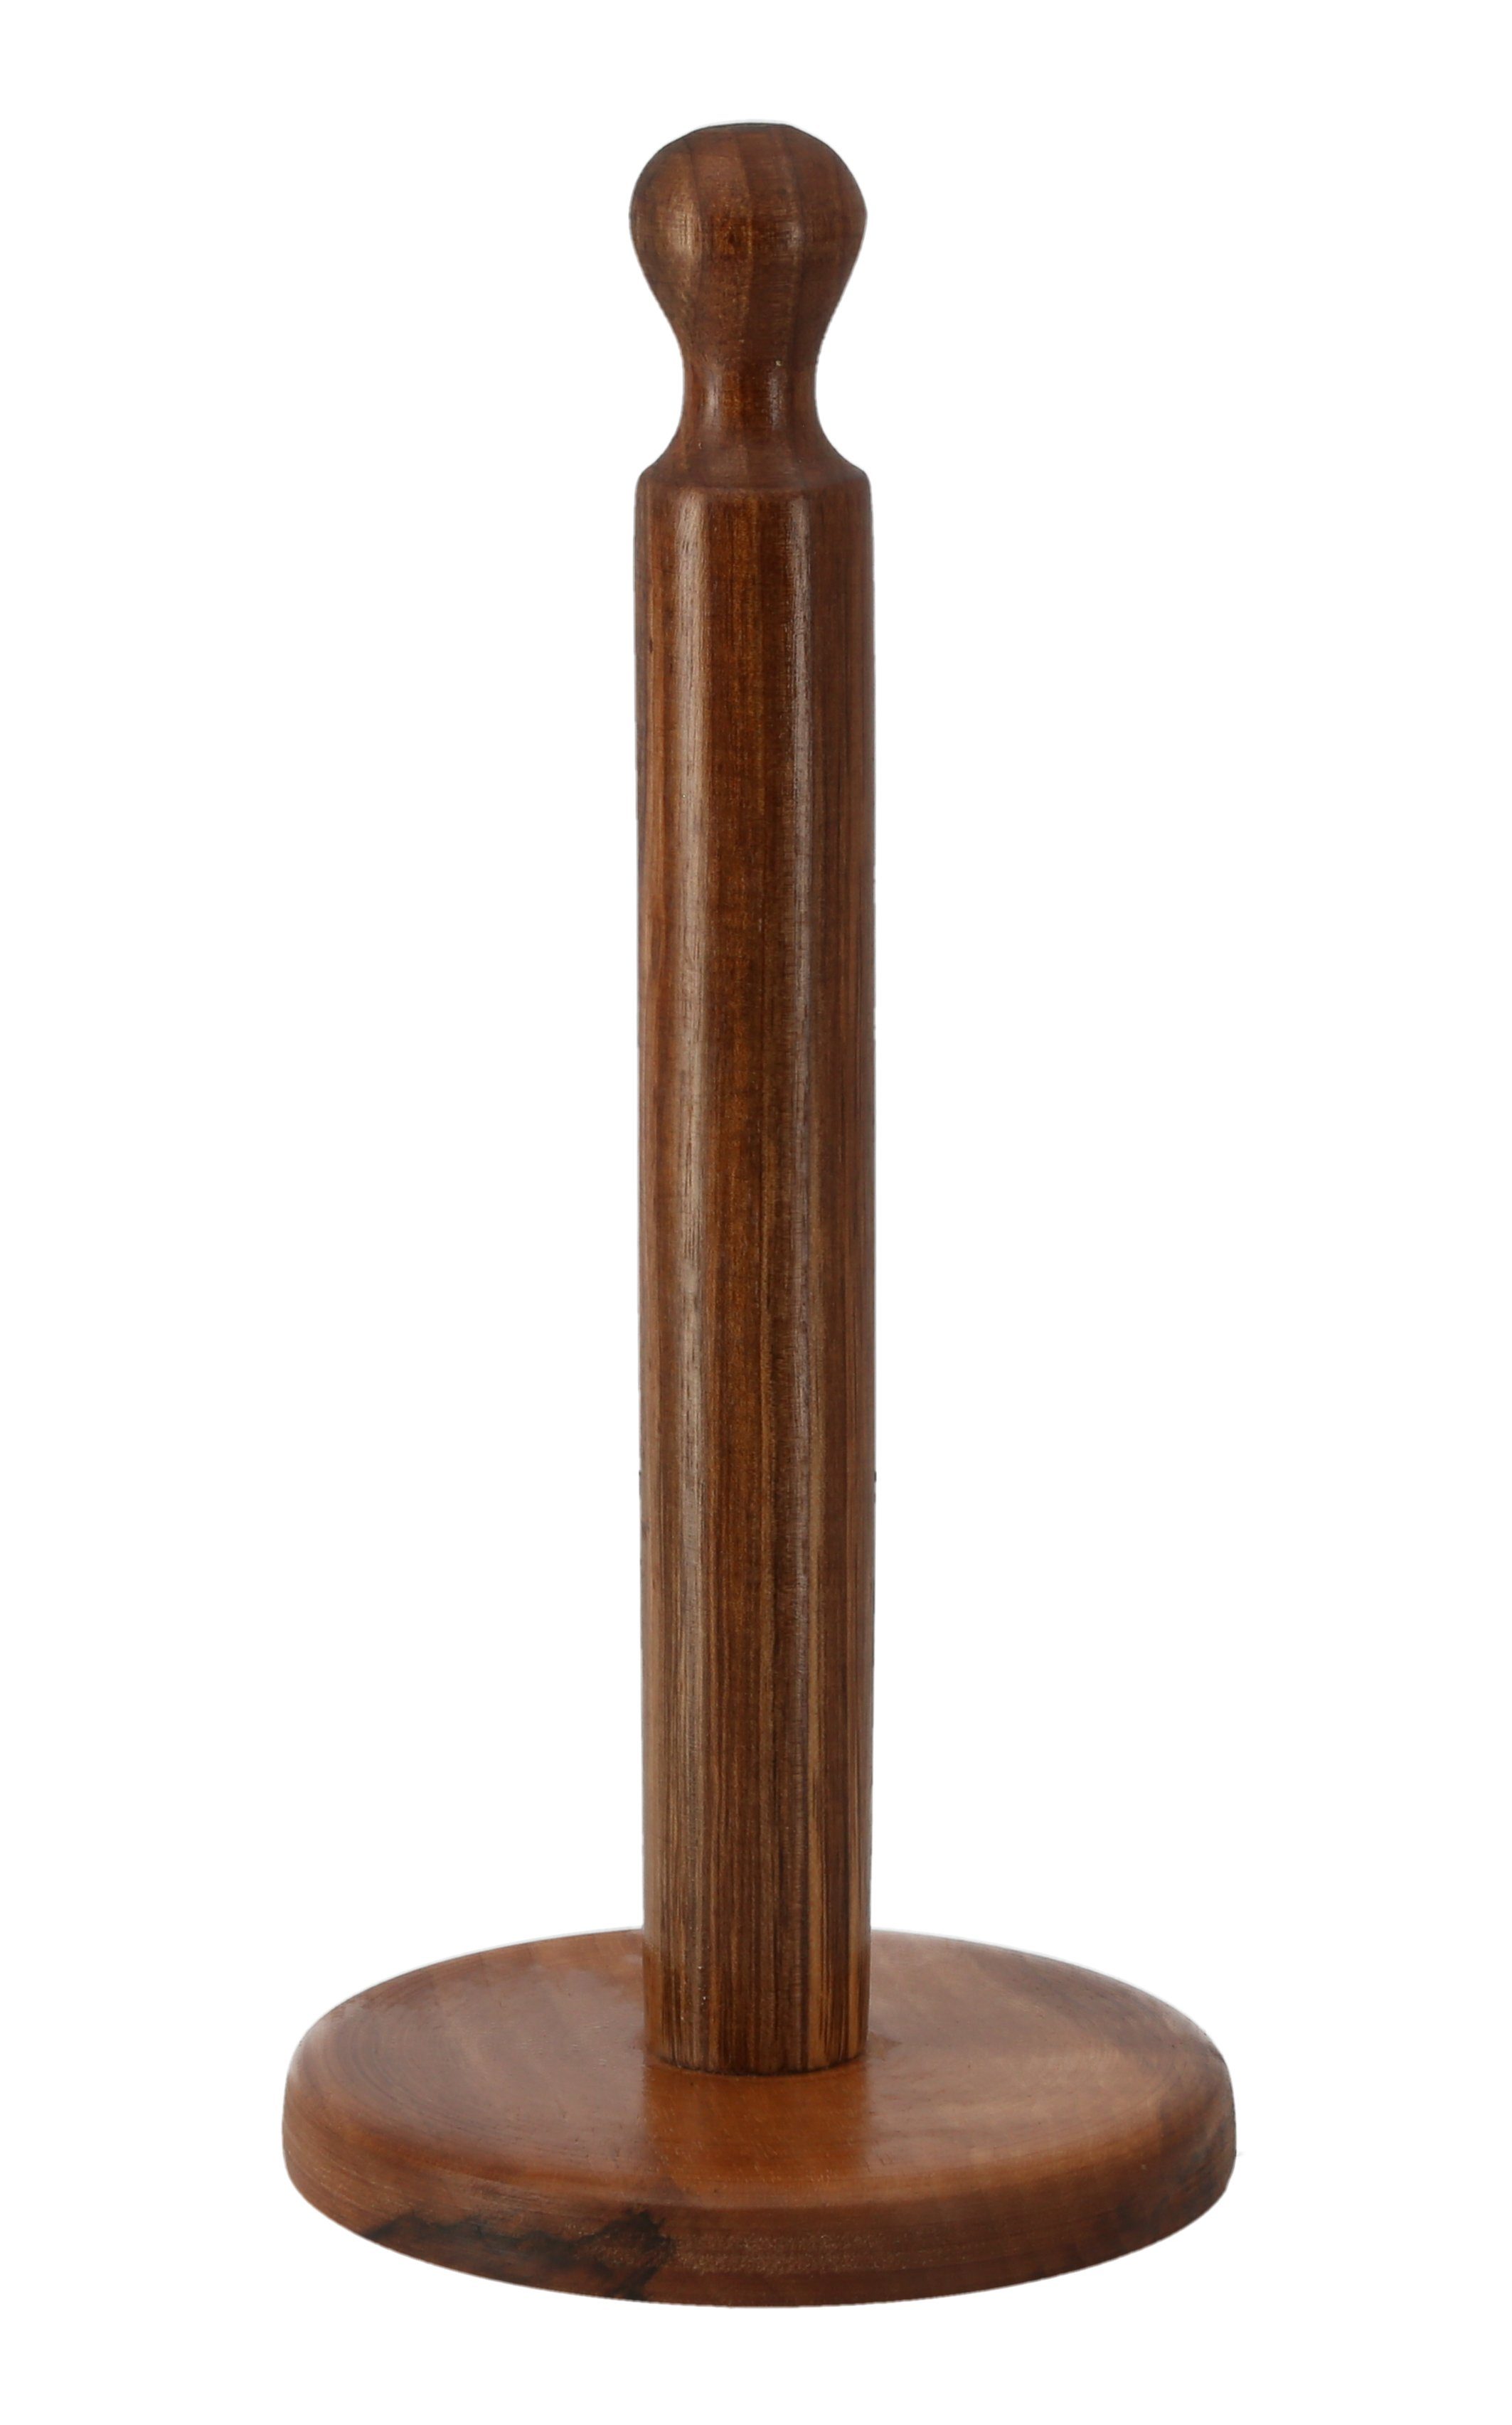 Lantelme Küchenrollenhalter Küchenrollenständer Holz, (100% Walnussholz, 1-St., 8713), 39cm höhe, einzigartige Maserung